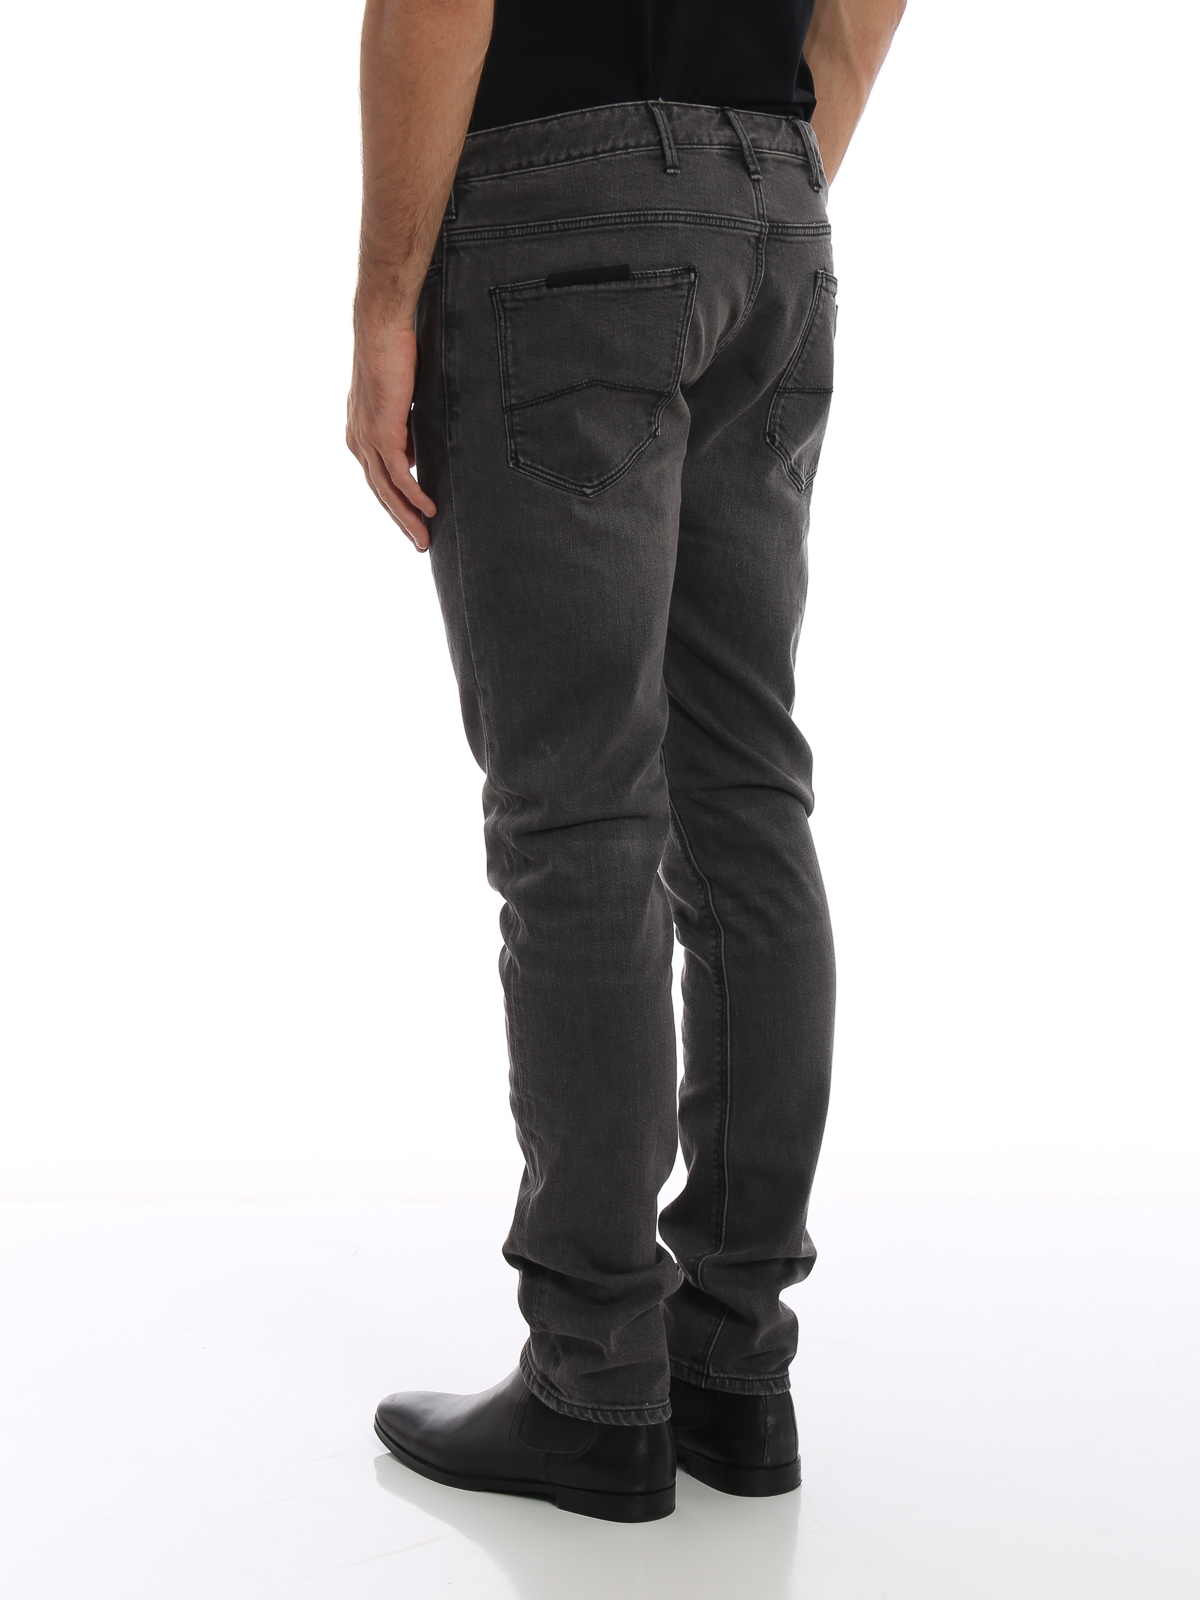 armani jeans j06 slim fit grey